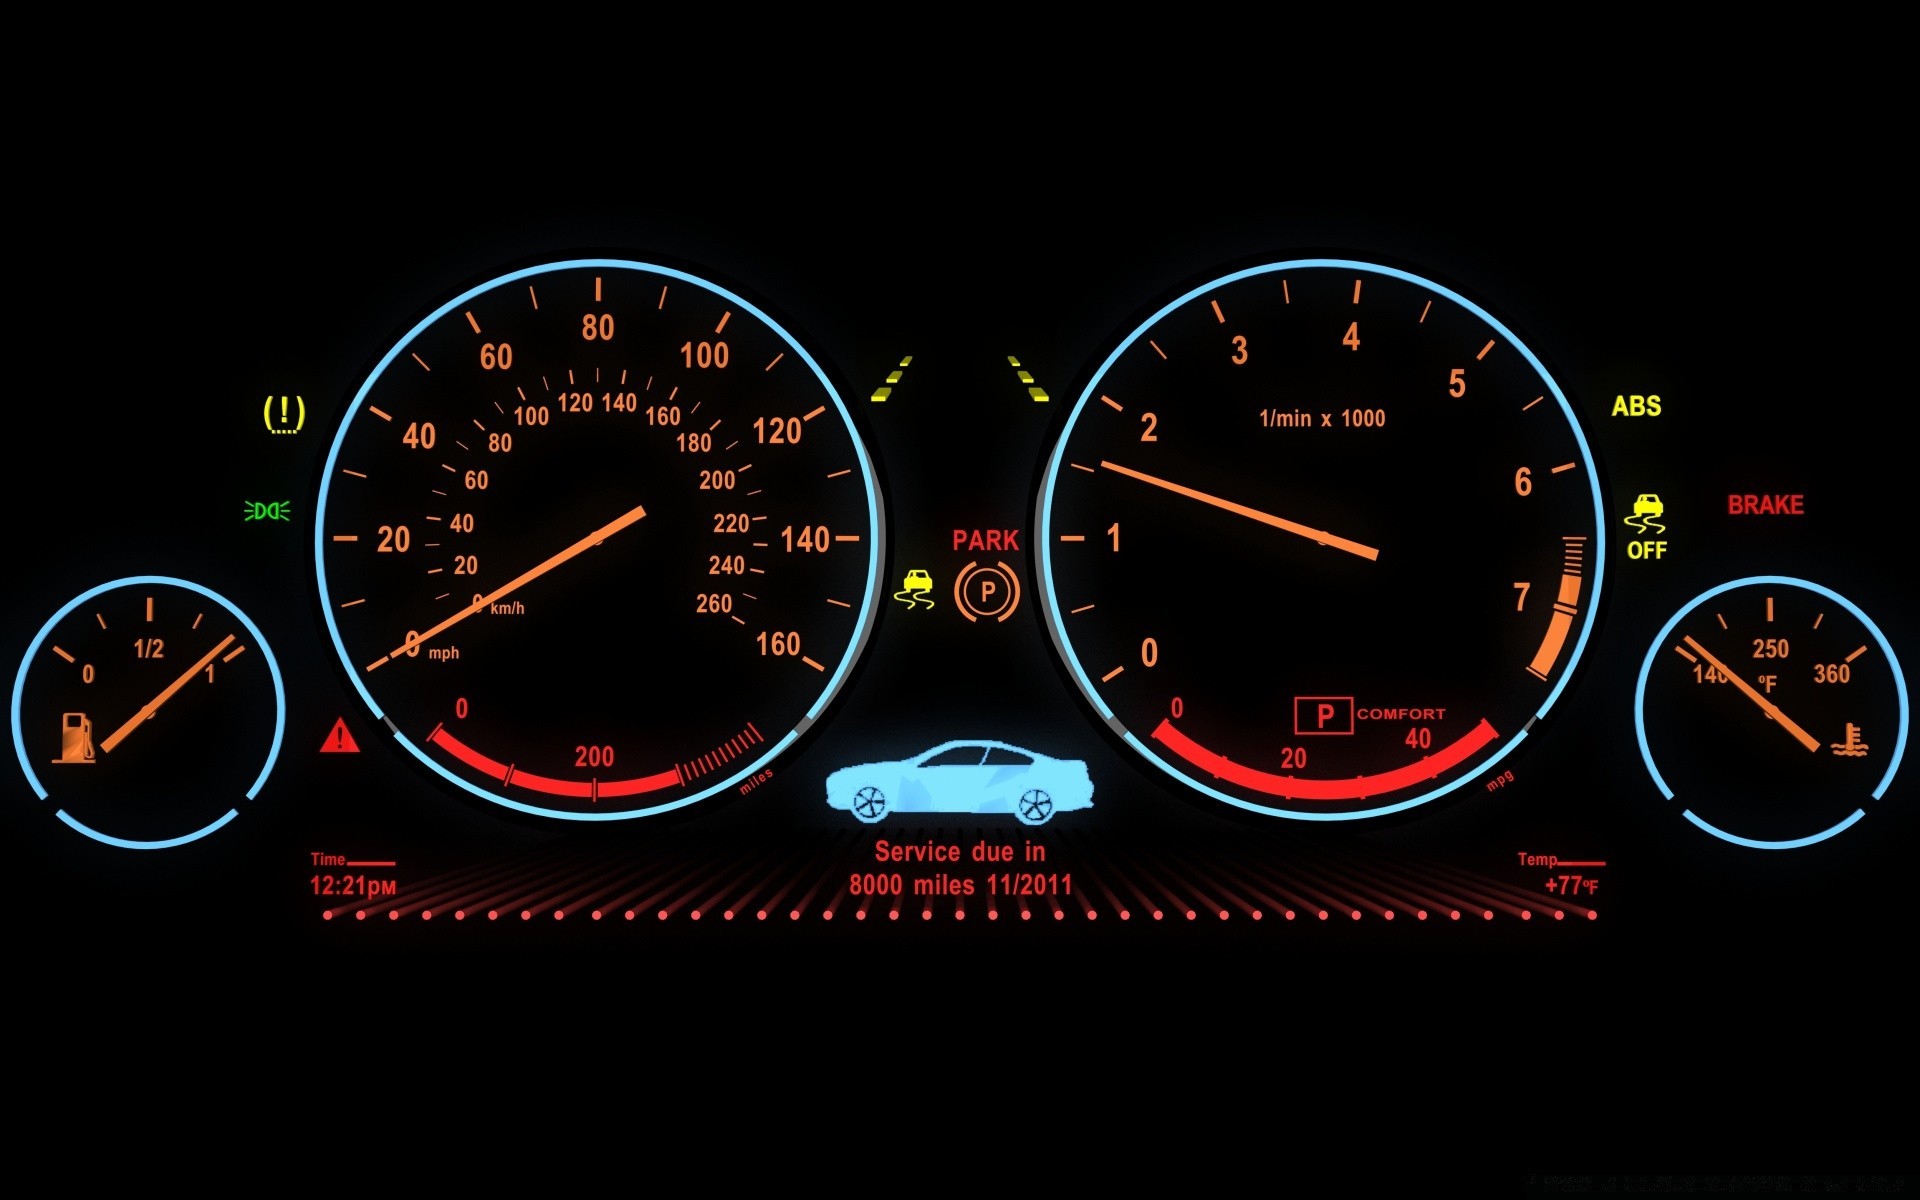 другая техника приборной панели спидометр одометр индикатор датчик количество черточки автомобиль циферблат предел меру указатель инструмент контроль счетчик иглы скорость температура бензин